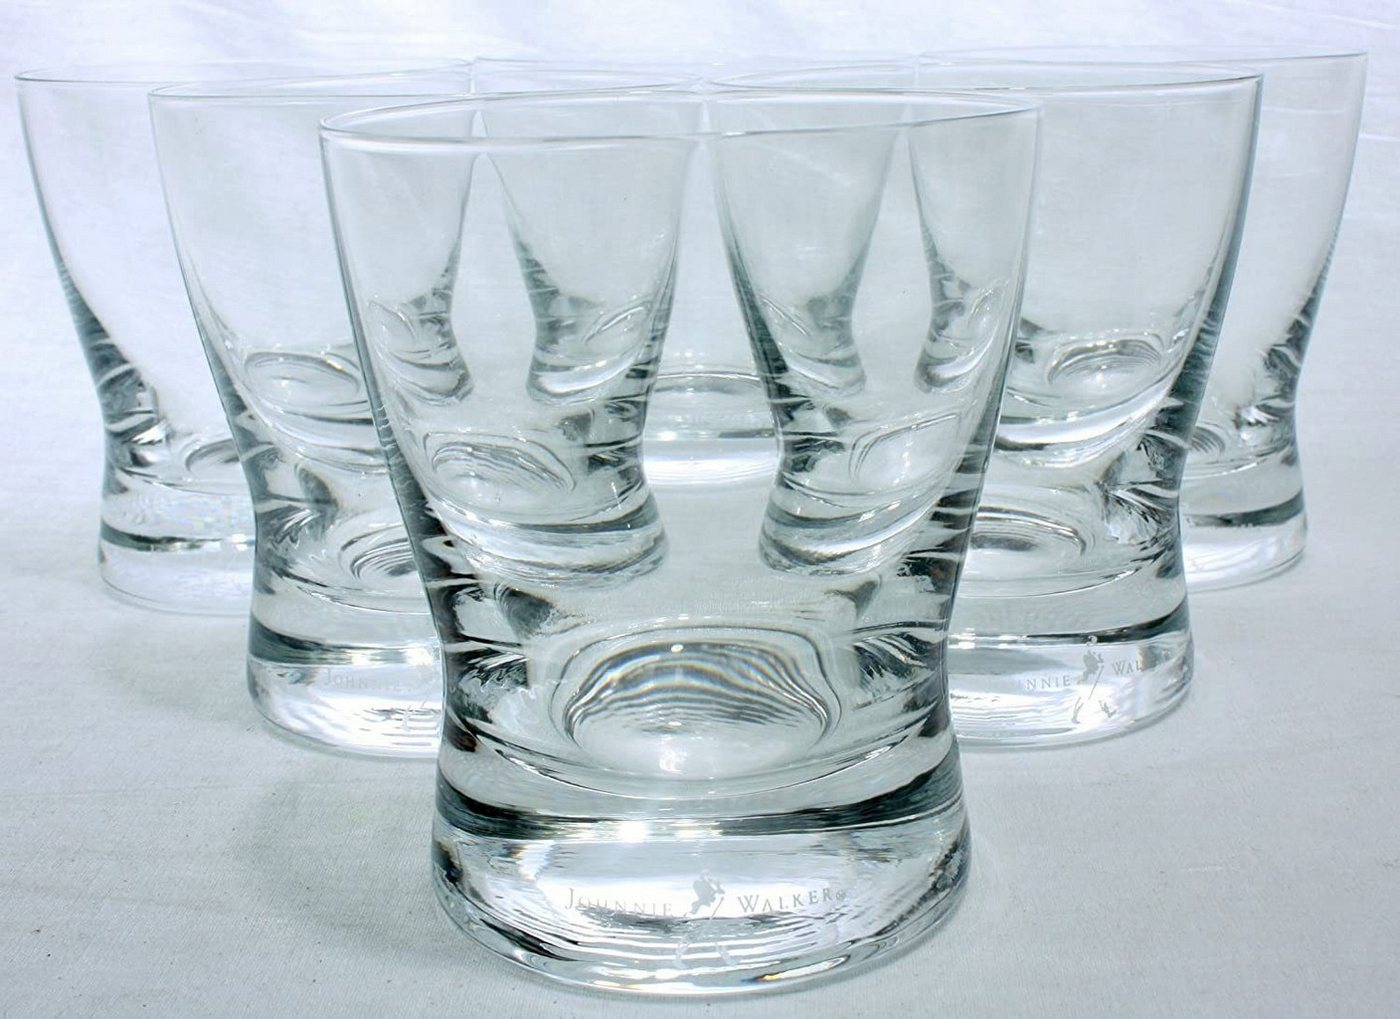 Johnnie Walker Whiskyglas 6 Whisky Gläser, 200ml Design, Scotch gläser Whiskeyglas, Qualität, aus robustem Glas, Tumbler, Gläserset, Whiskey Glas, Gläser, mit Schriftzug, Longdrink von Johnnie Walker